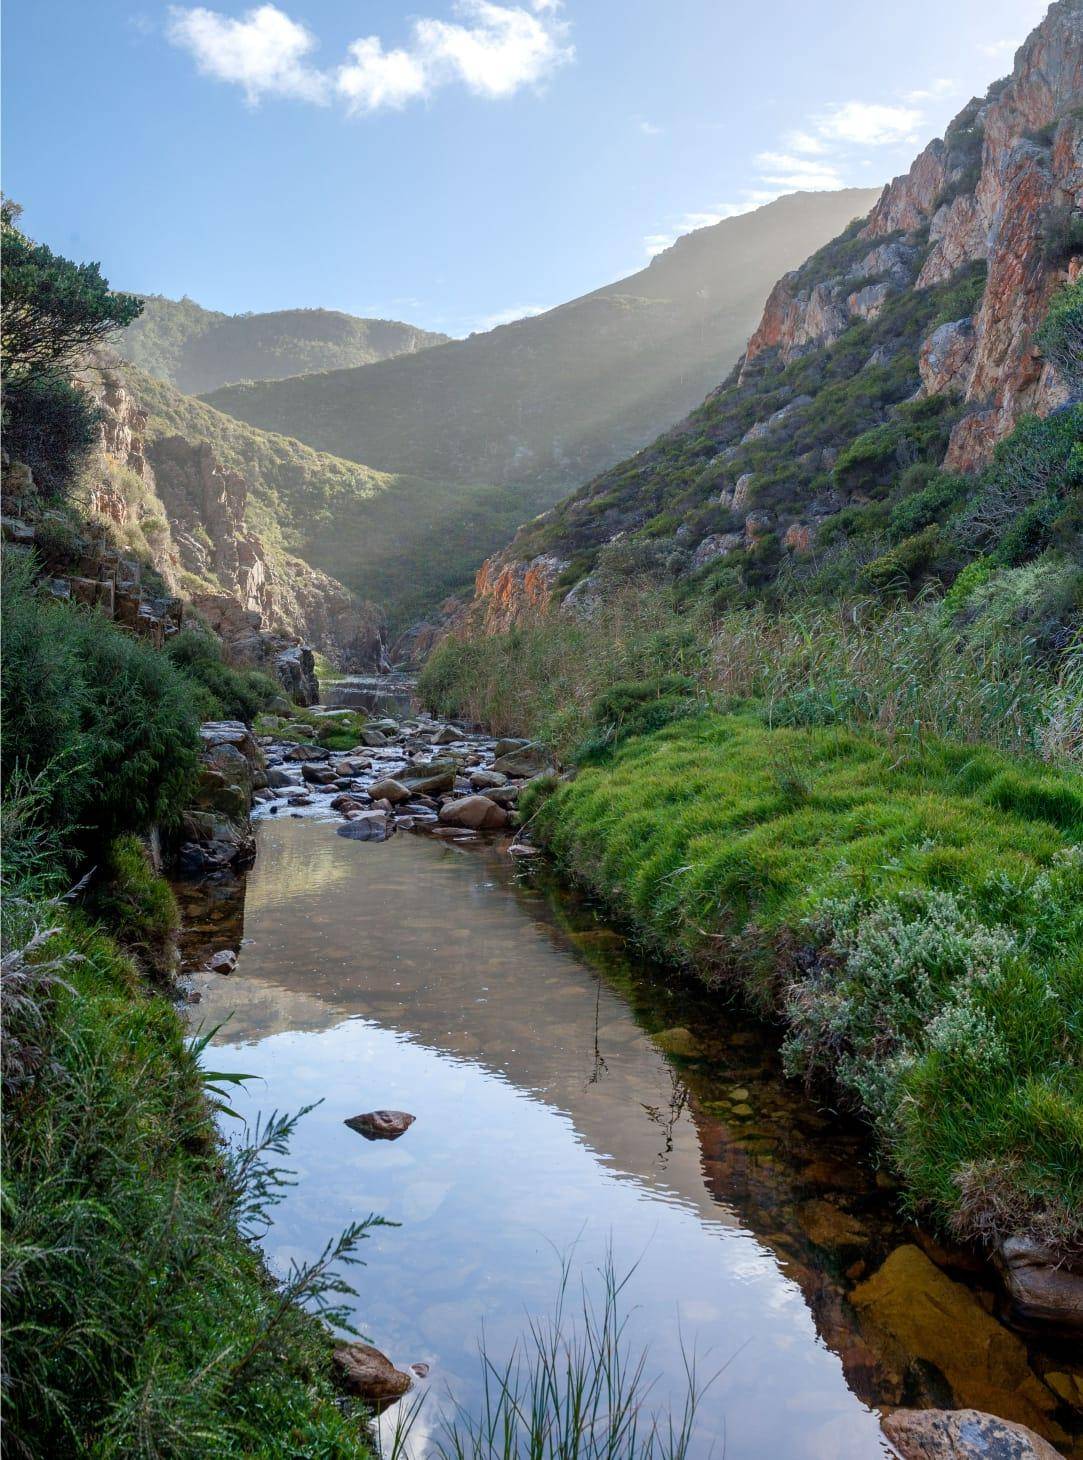 Ruta escénica desde Ciudad del Cabo: Safaris y naturaleza a tu ritmo